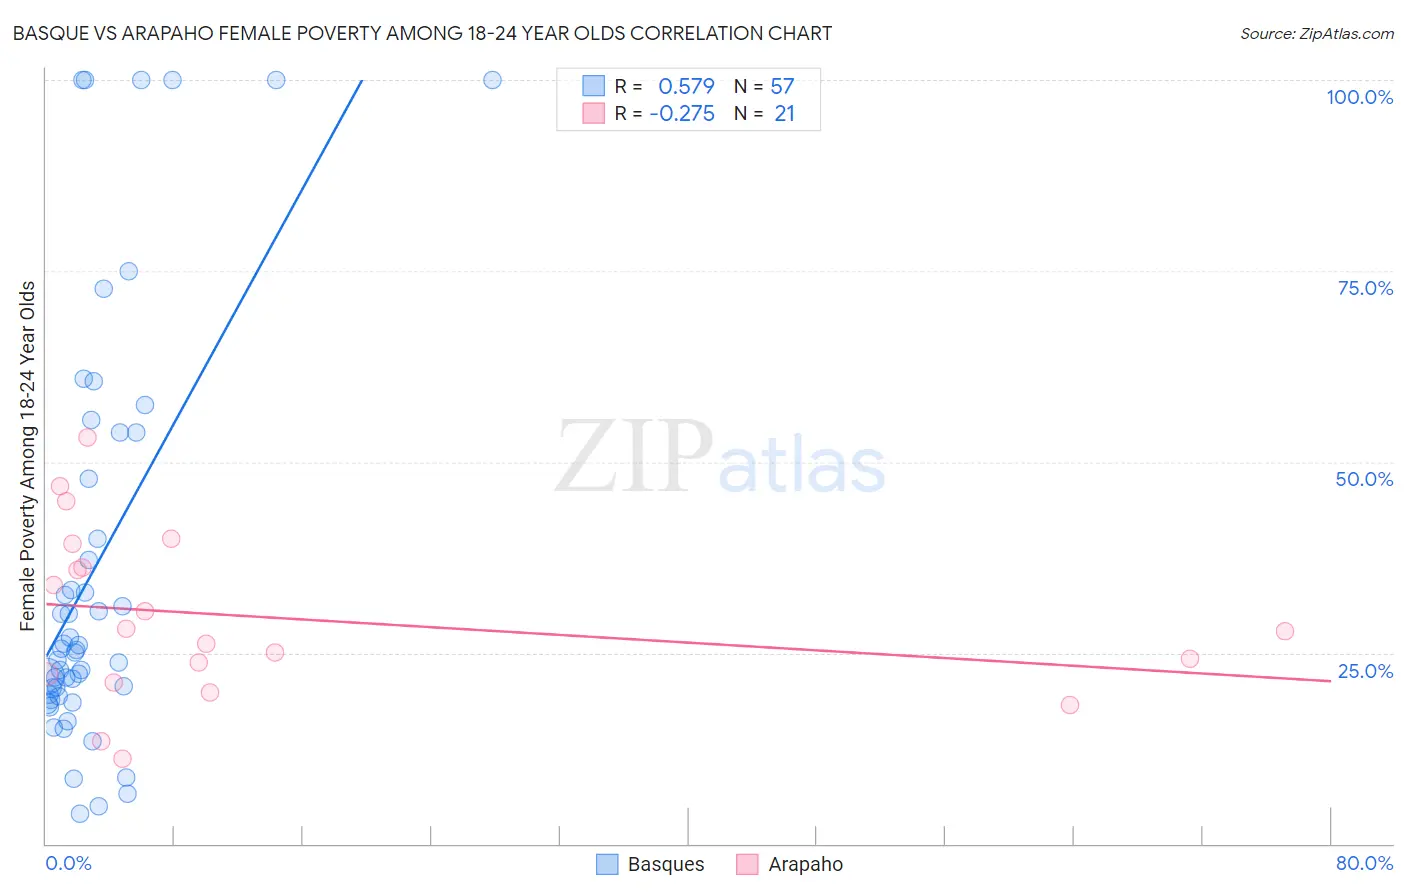 Basque vs Arapaho Female Poverty Among 18-24 Year Olds